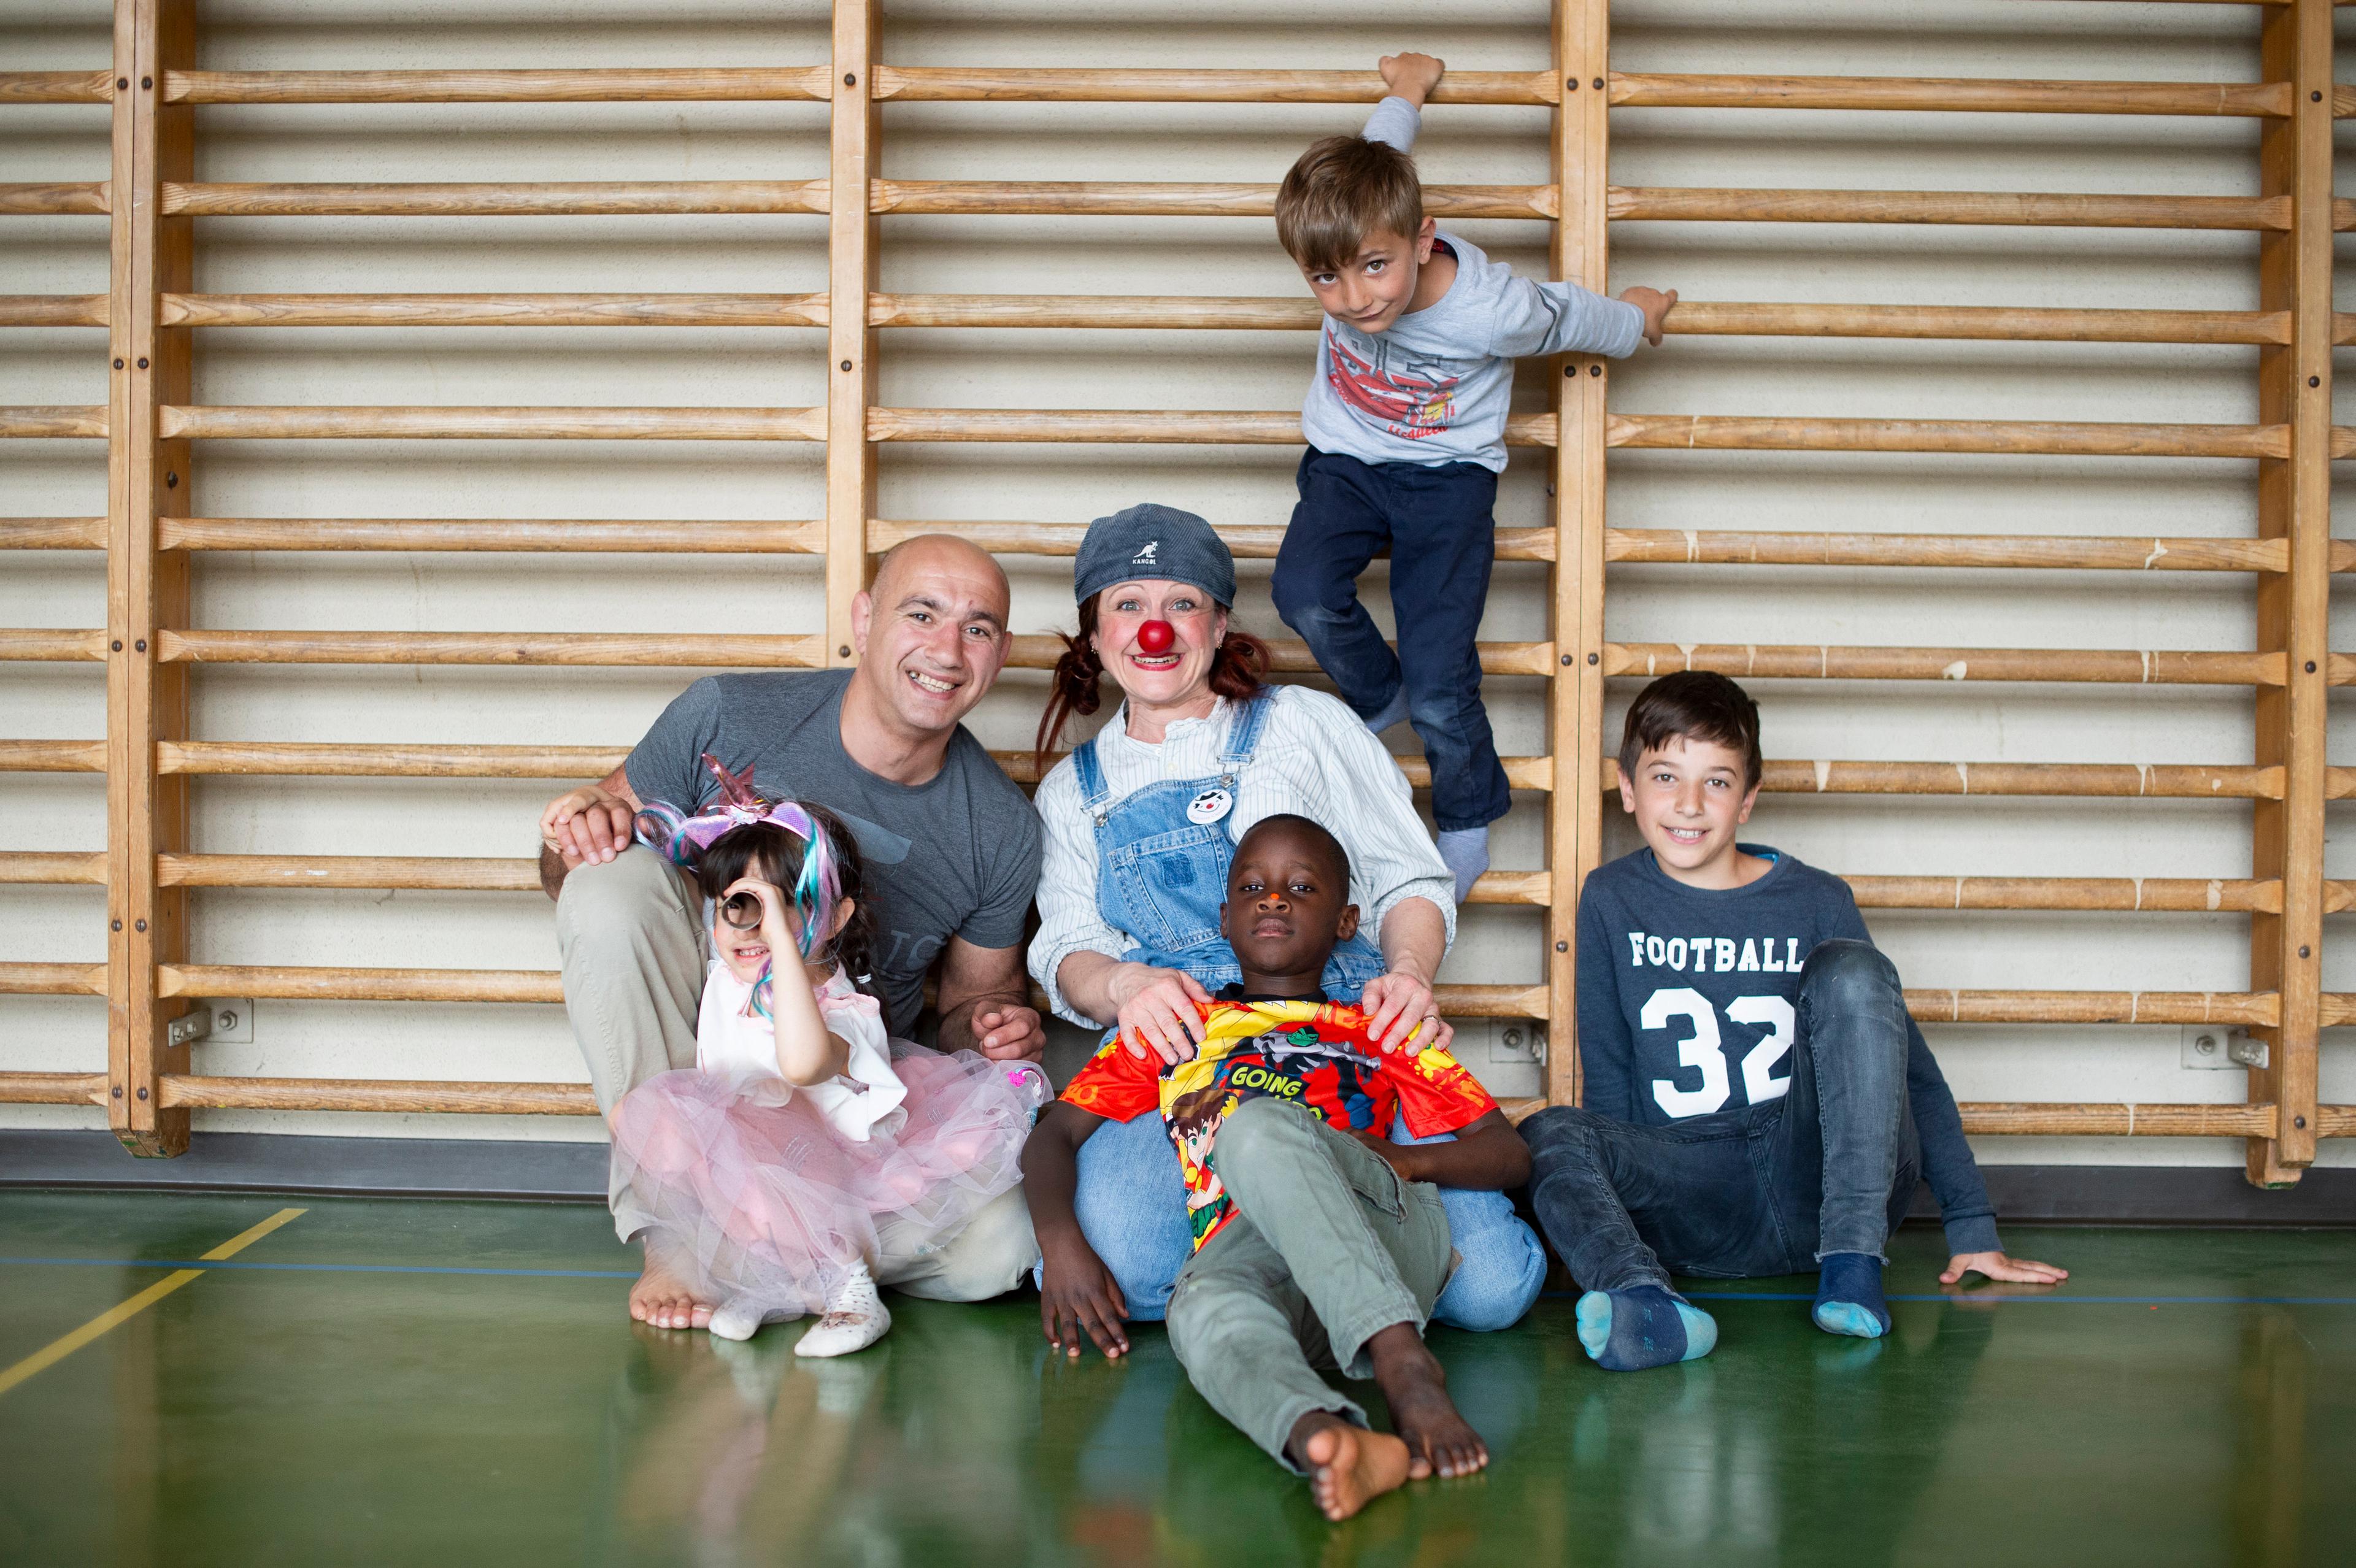 Die vierjährige Marianne, ihr Vater, Clownin Zilibii und zwei Knaben sitzen in einer Turnhalle auf dem Boden.  Ein Knabe hält sich darüber an der Sprossenfwand fest. Alle lachen.